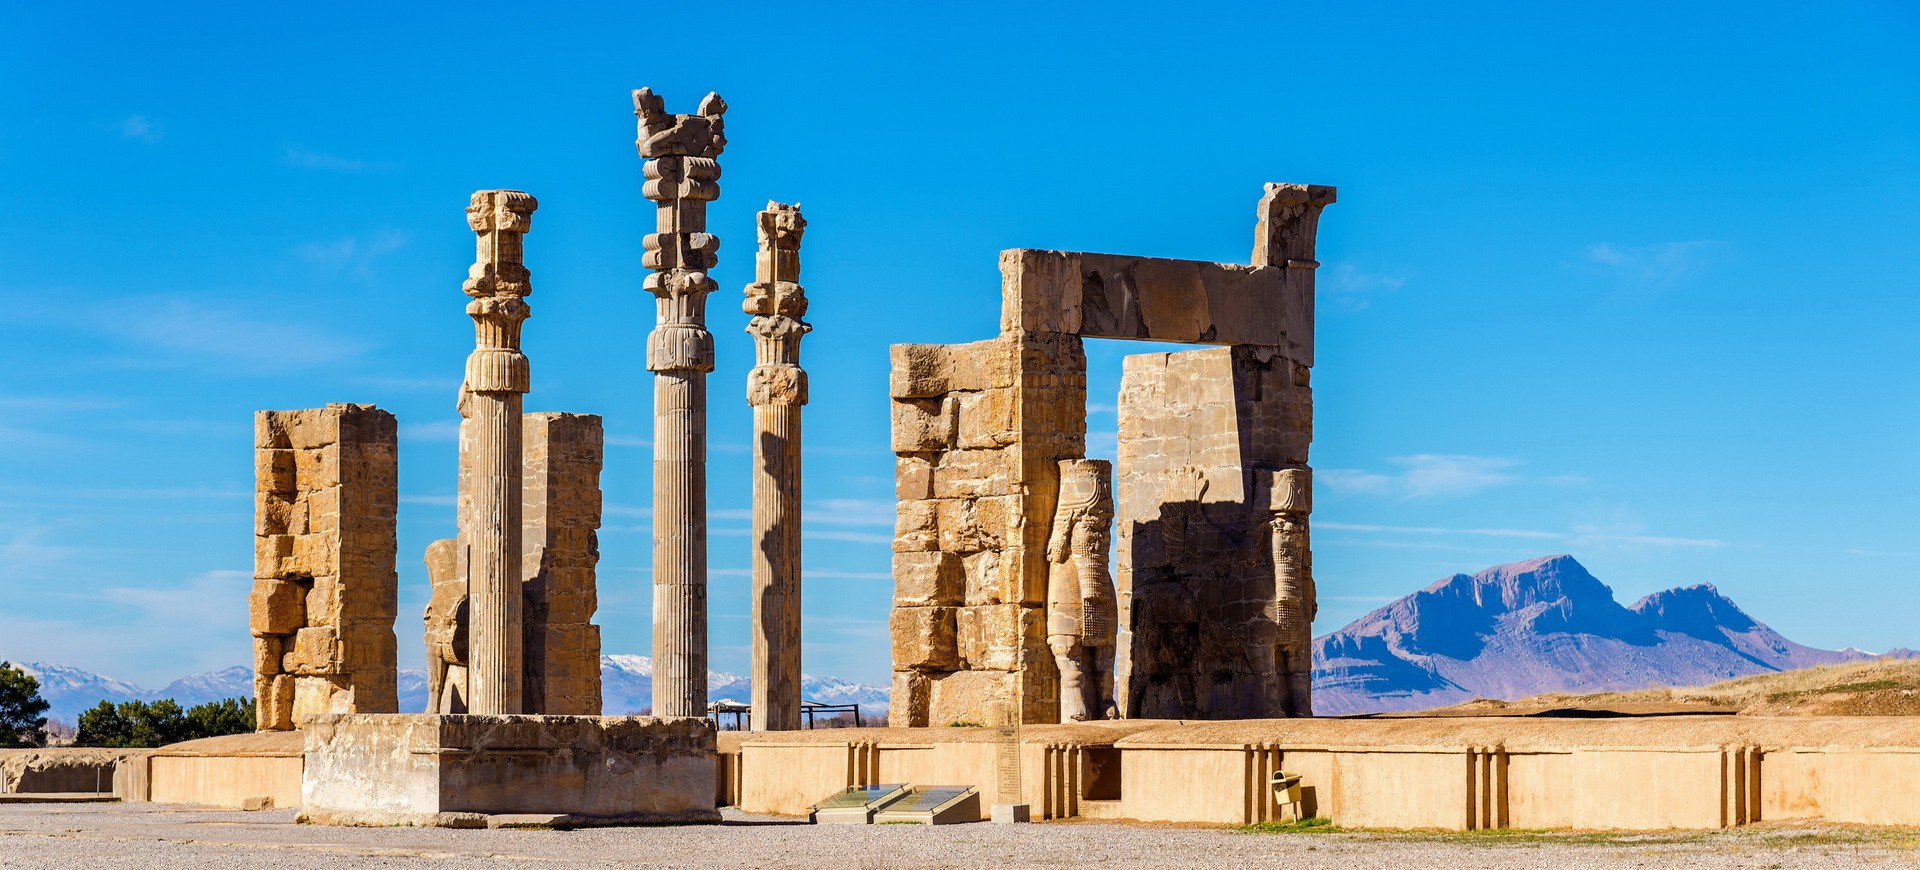 Site antique de Persepolis